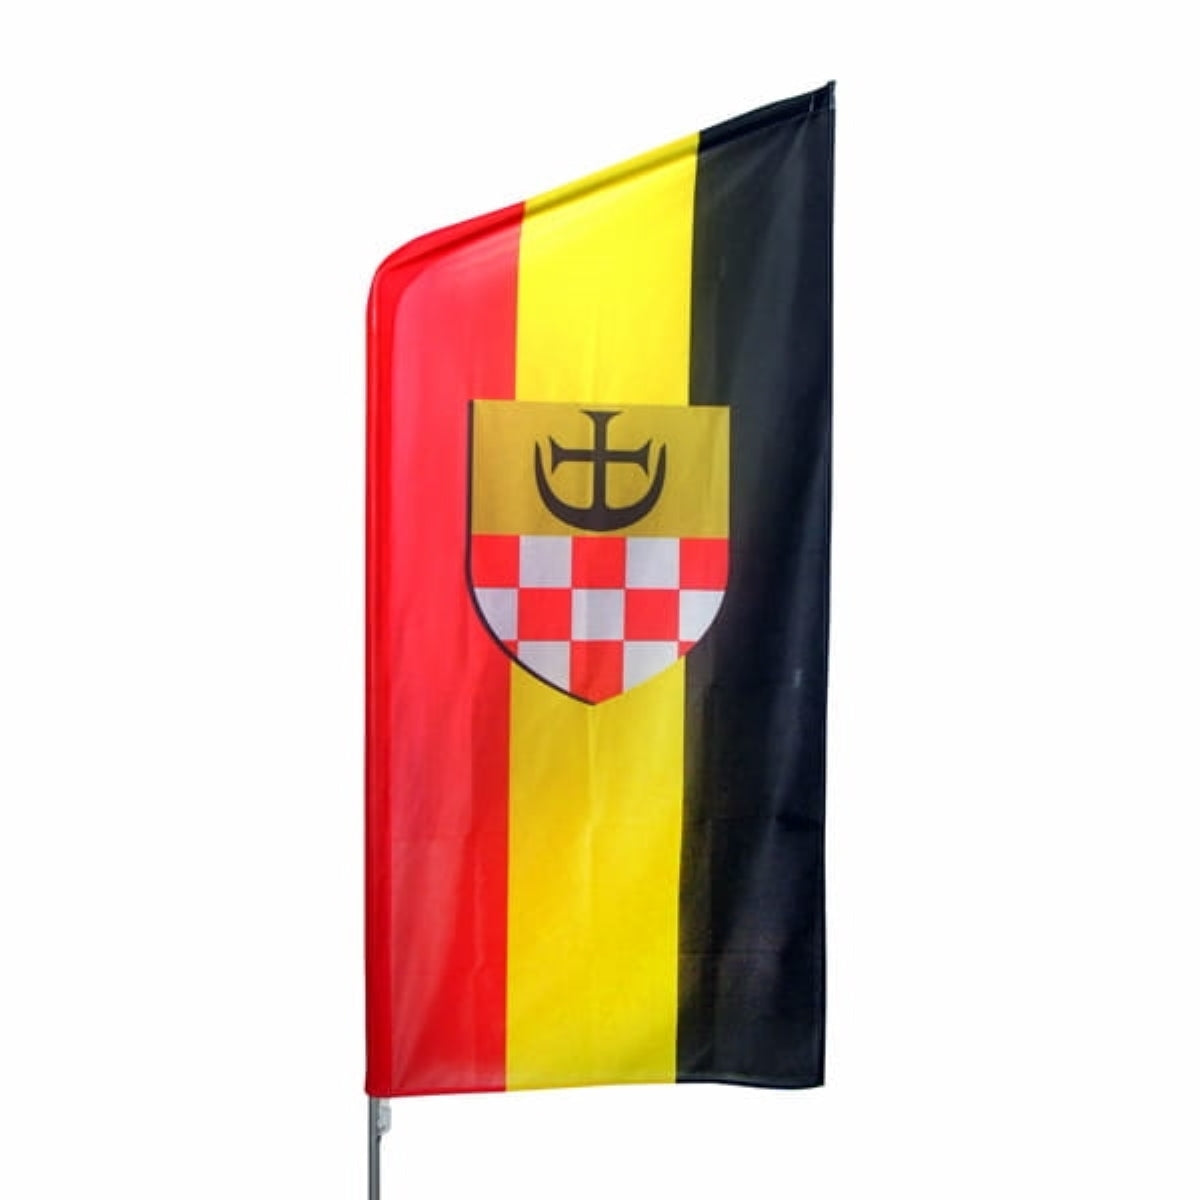 Reklamní vlajka Hussar S (80x183 cm) s hliníkovým stožárem